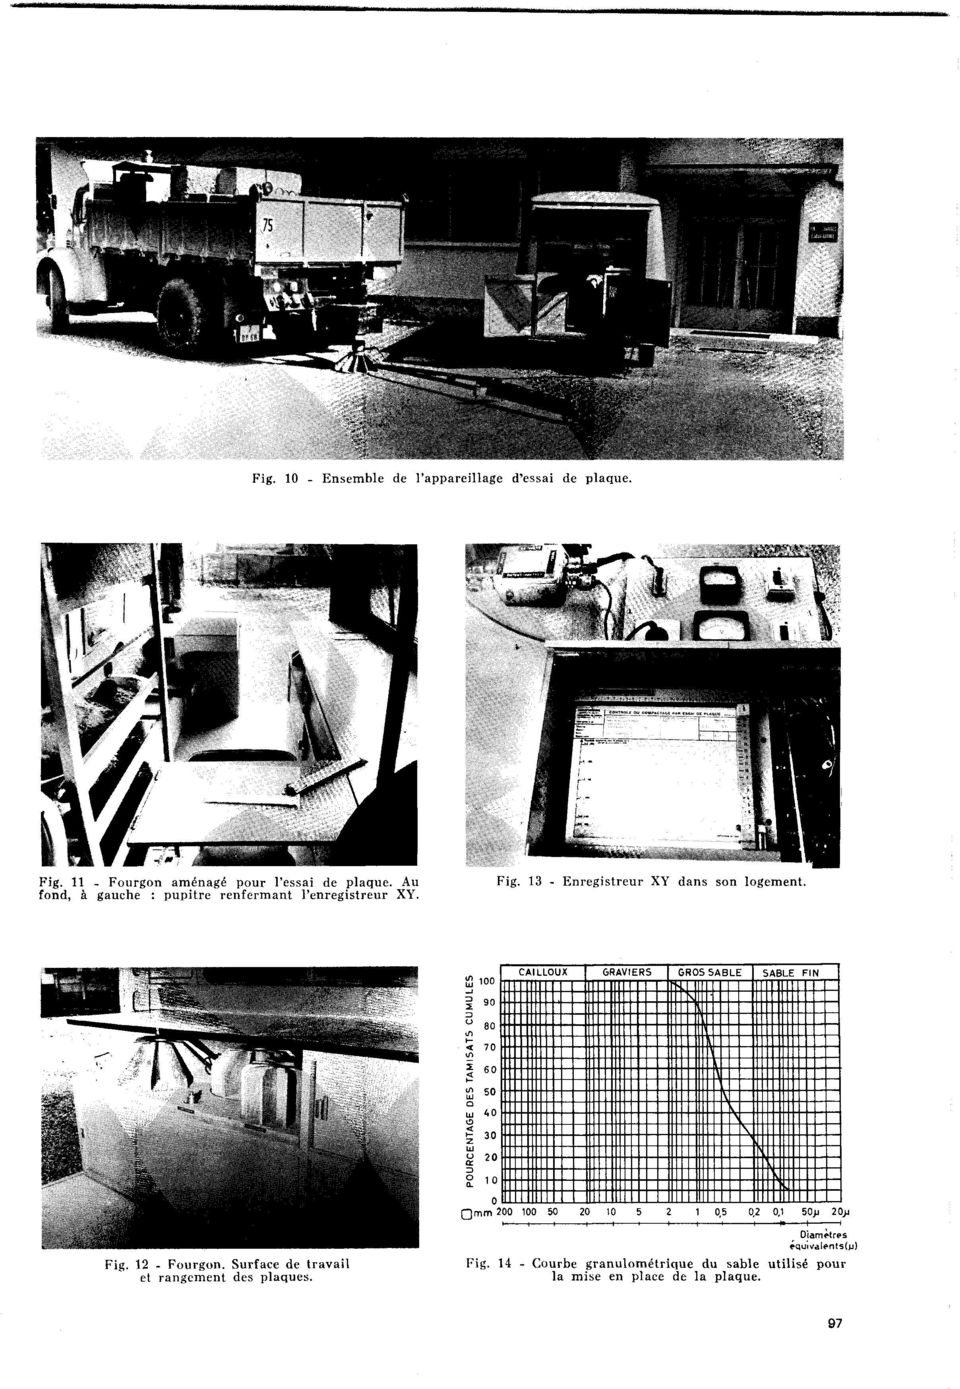 13 - Enregistreur XY dans son logement, fond, à gauche : pupitre renfermant l'enregistreur